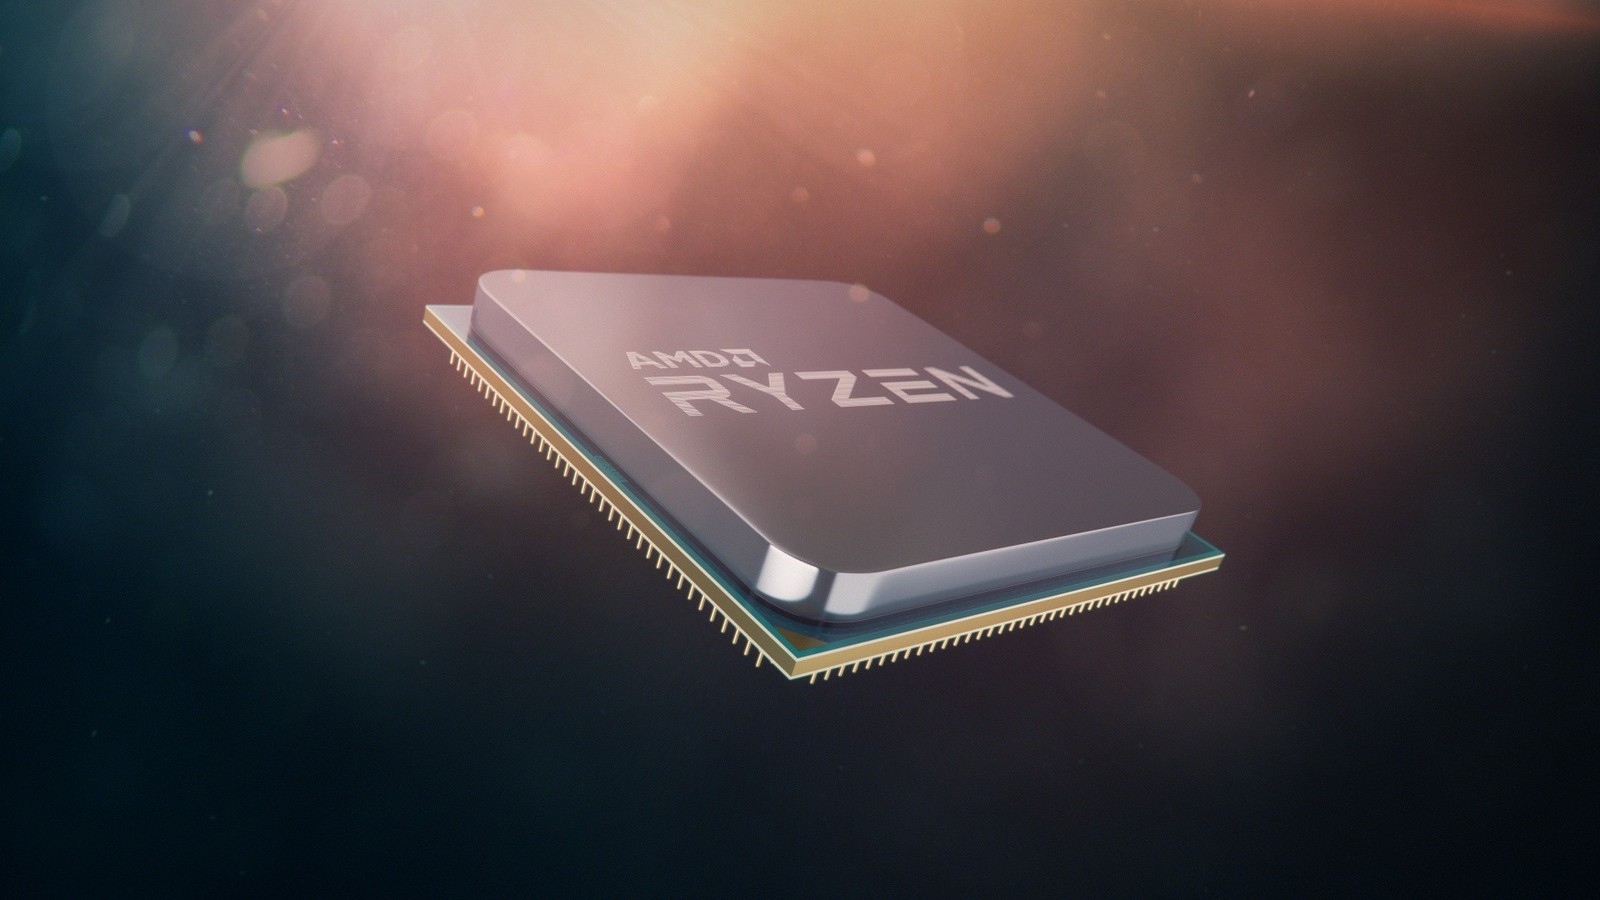 Mobilny procesor AMD Ryzen 7 2700U w bazie Geekbench